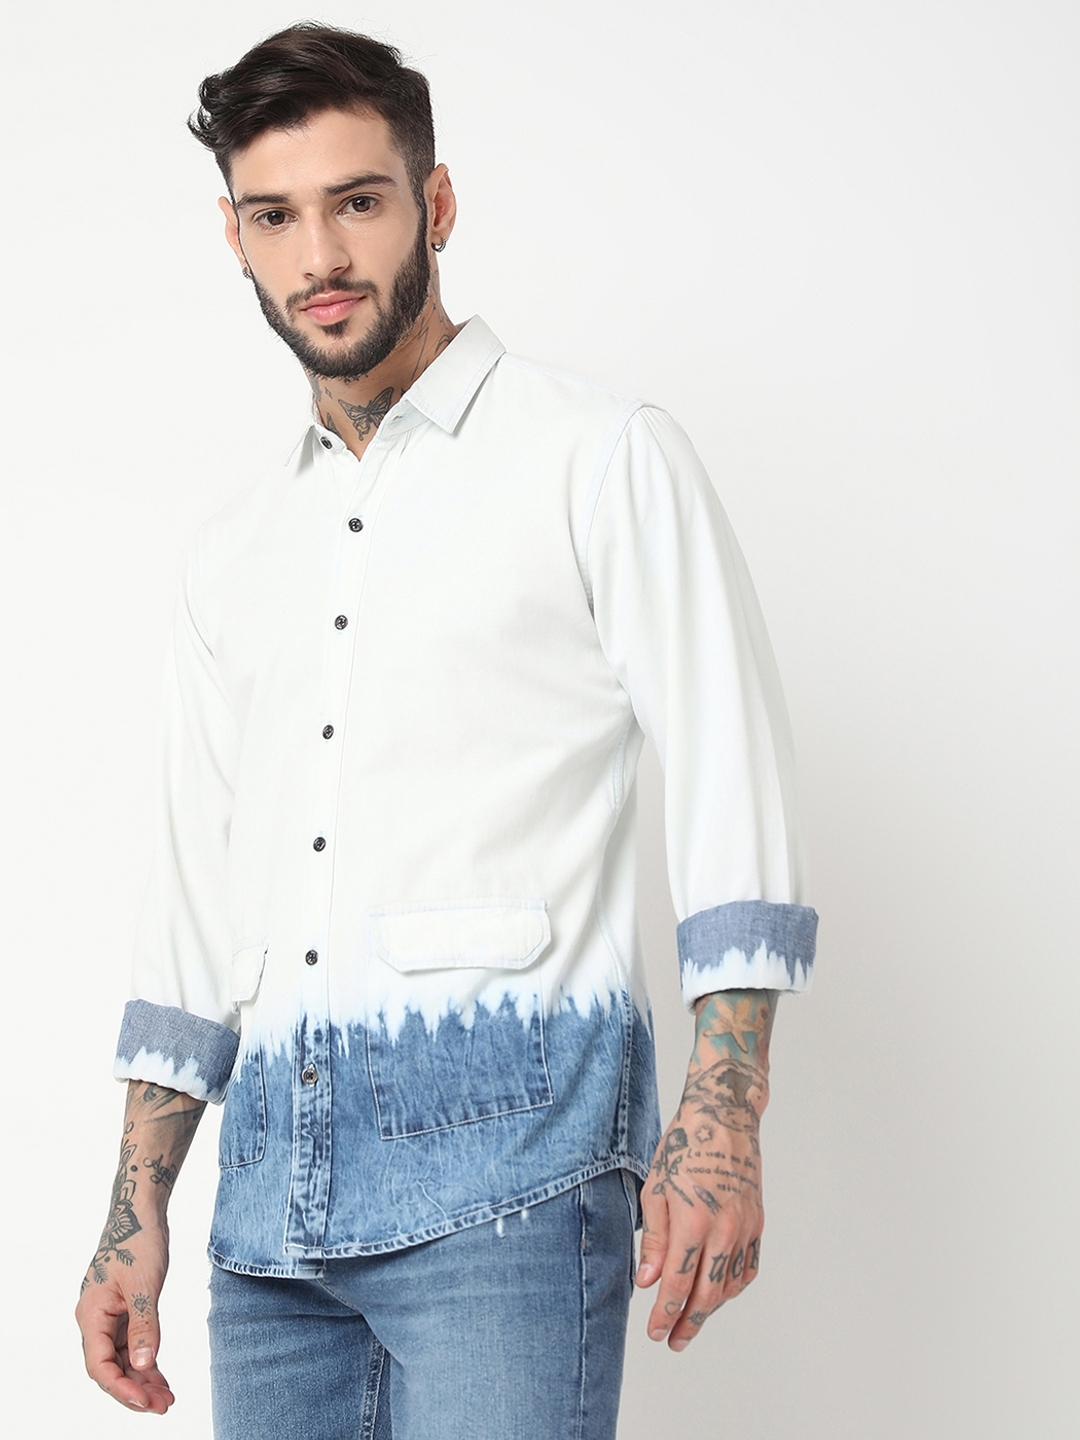 White Shirt Blue Jeans Style Guide: For Men & Women - Bewakoof Blog